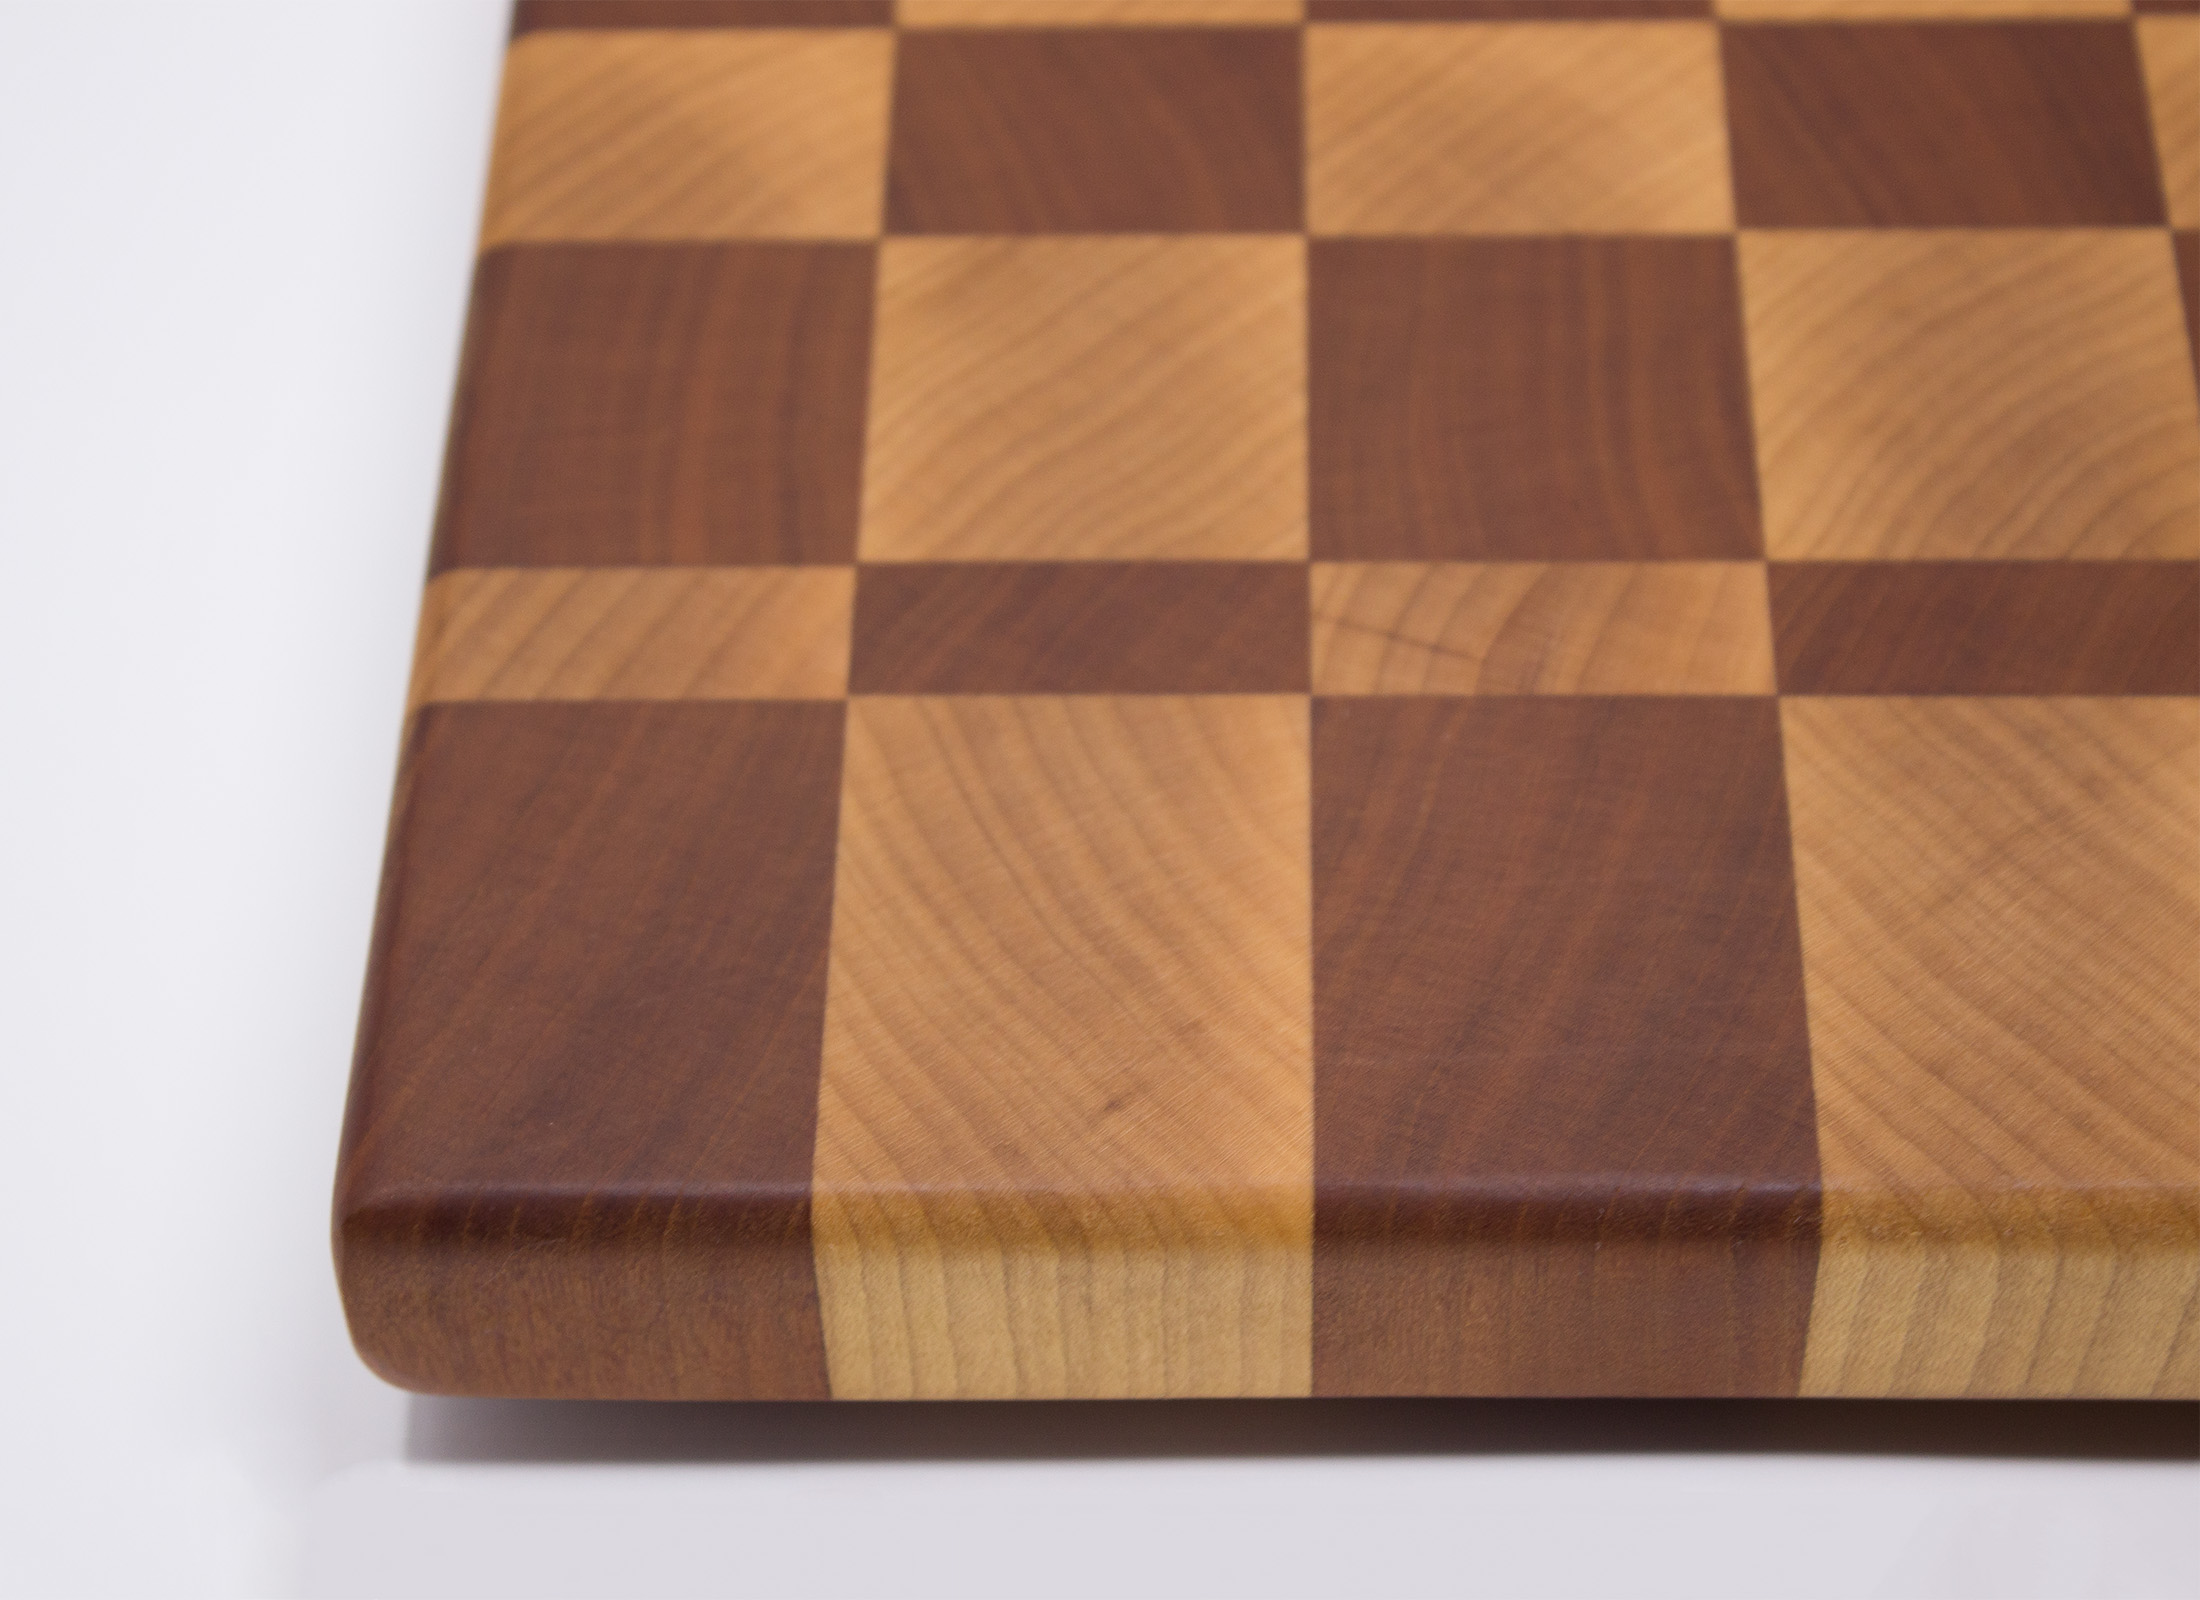 Checkered End Grain Cutting Board - CB06